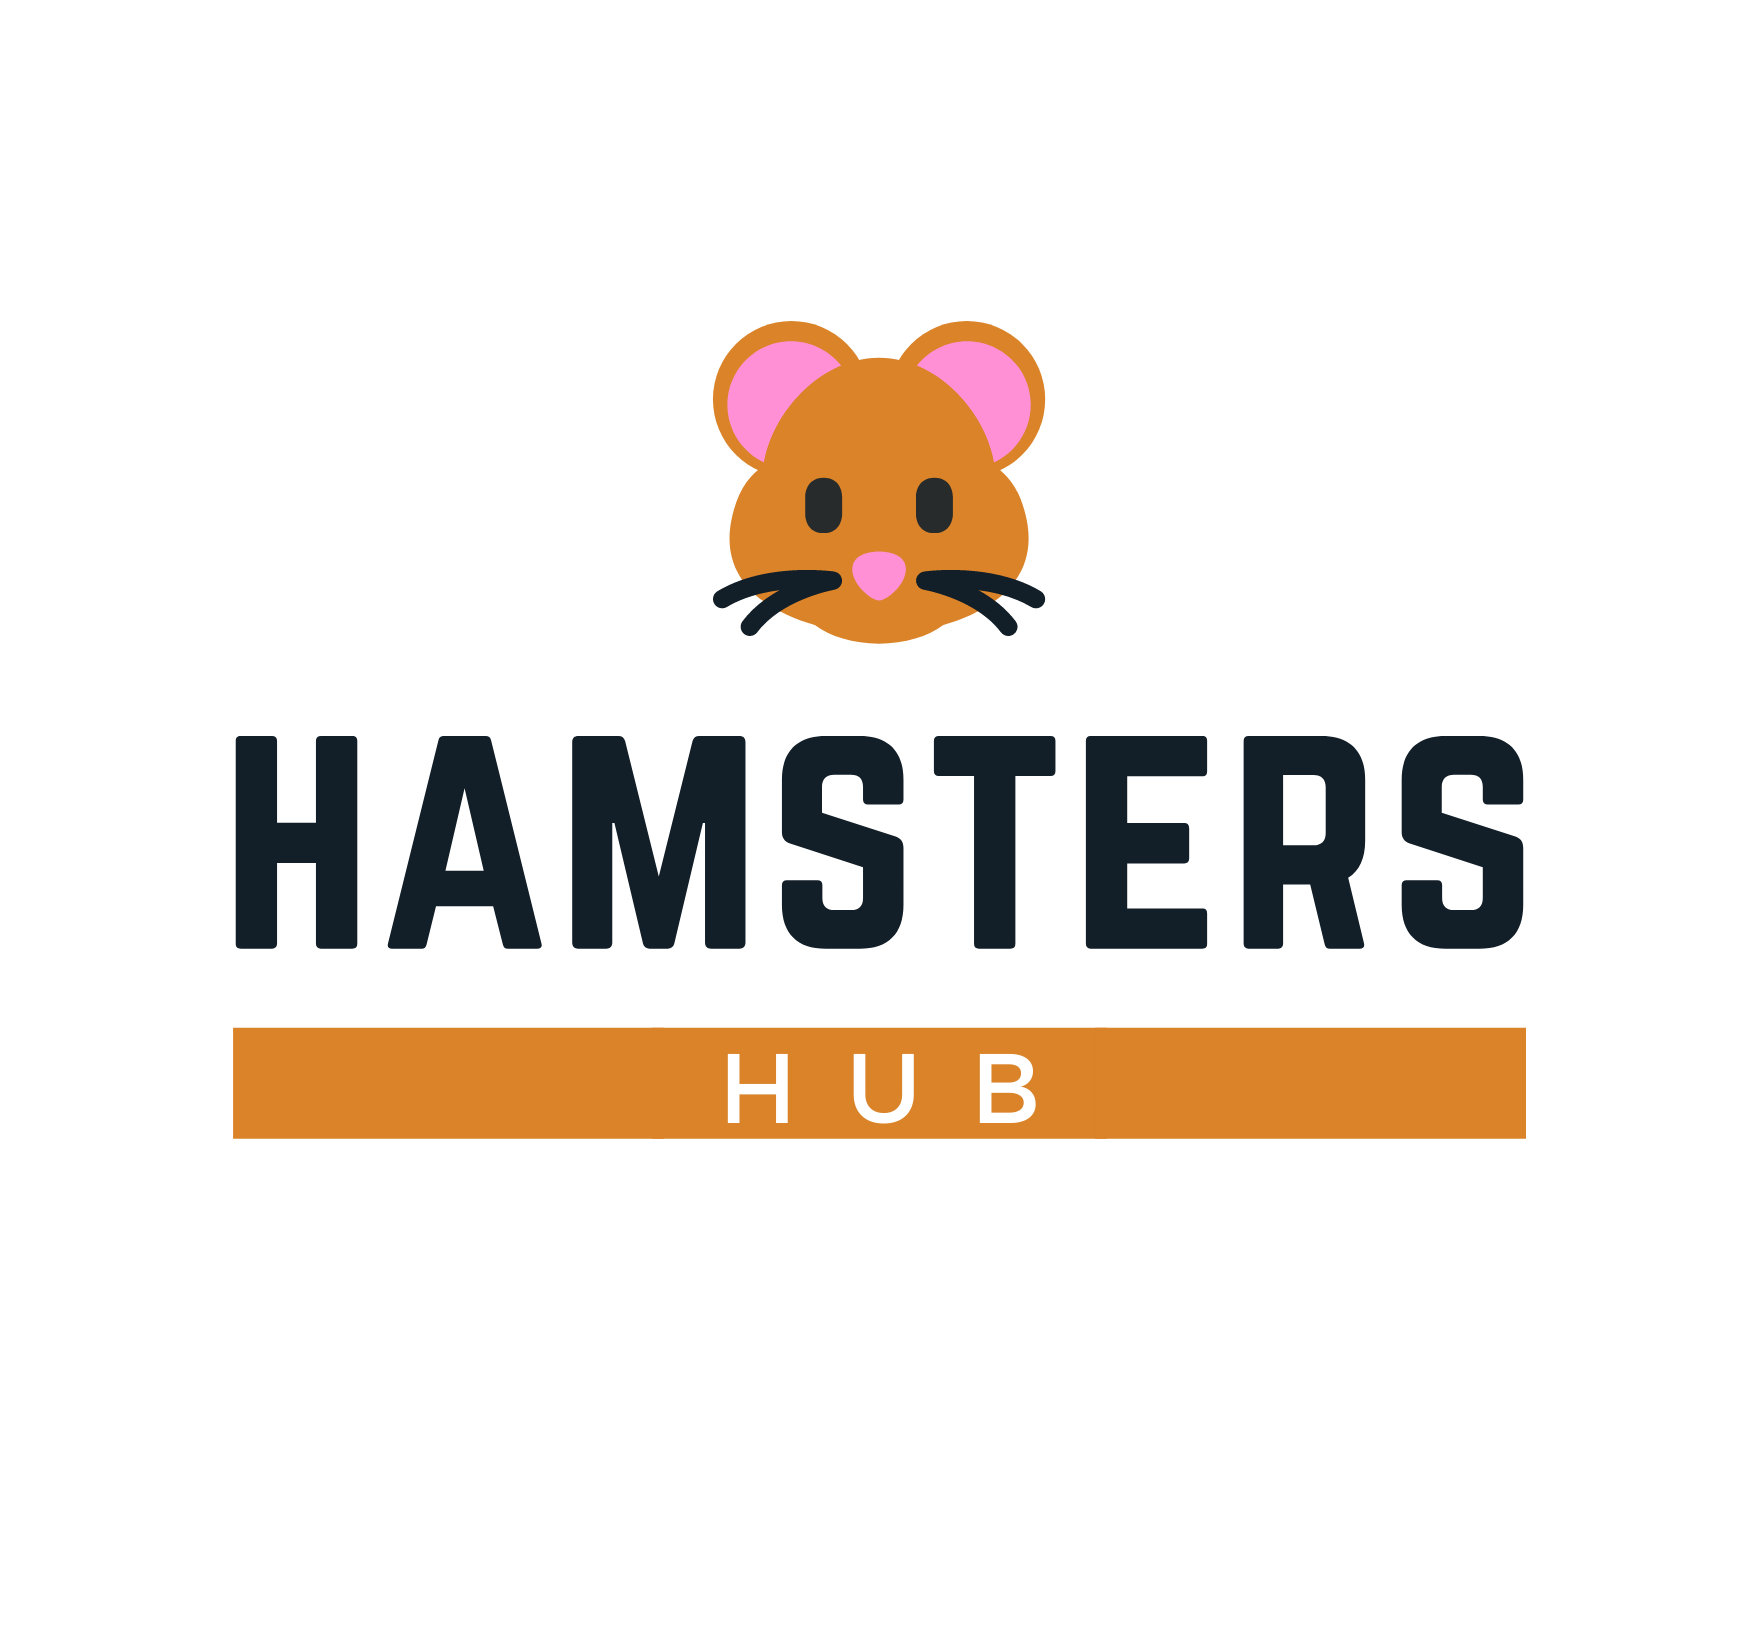 HamstersHub